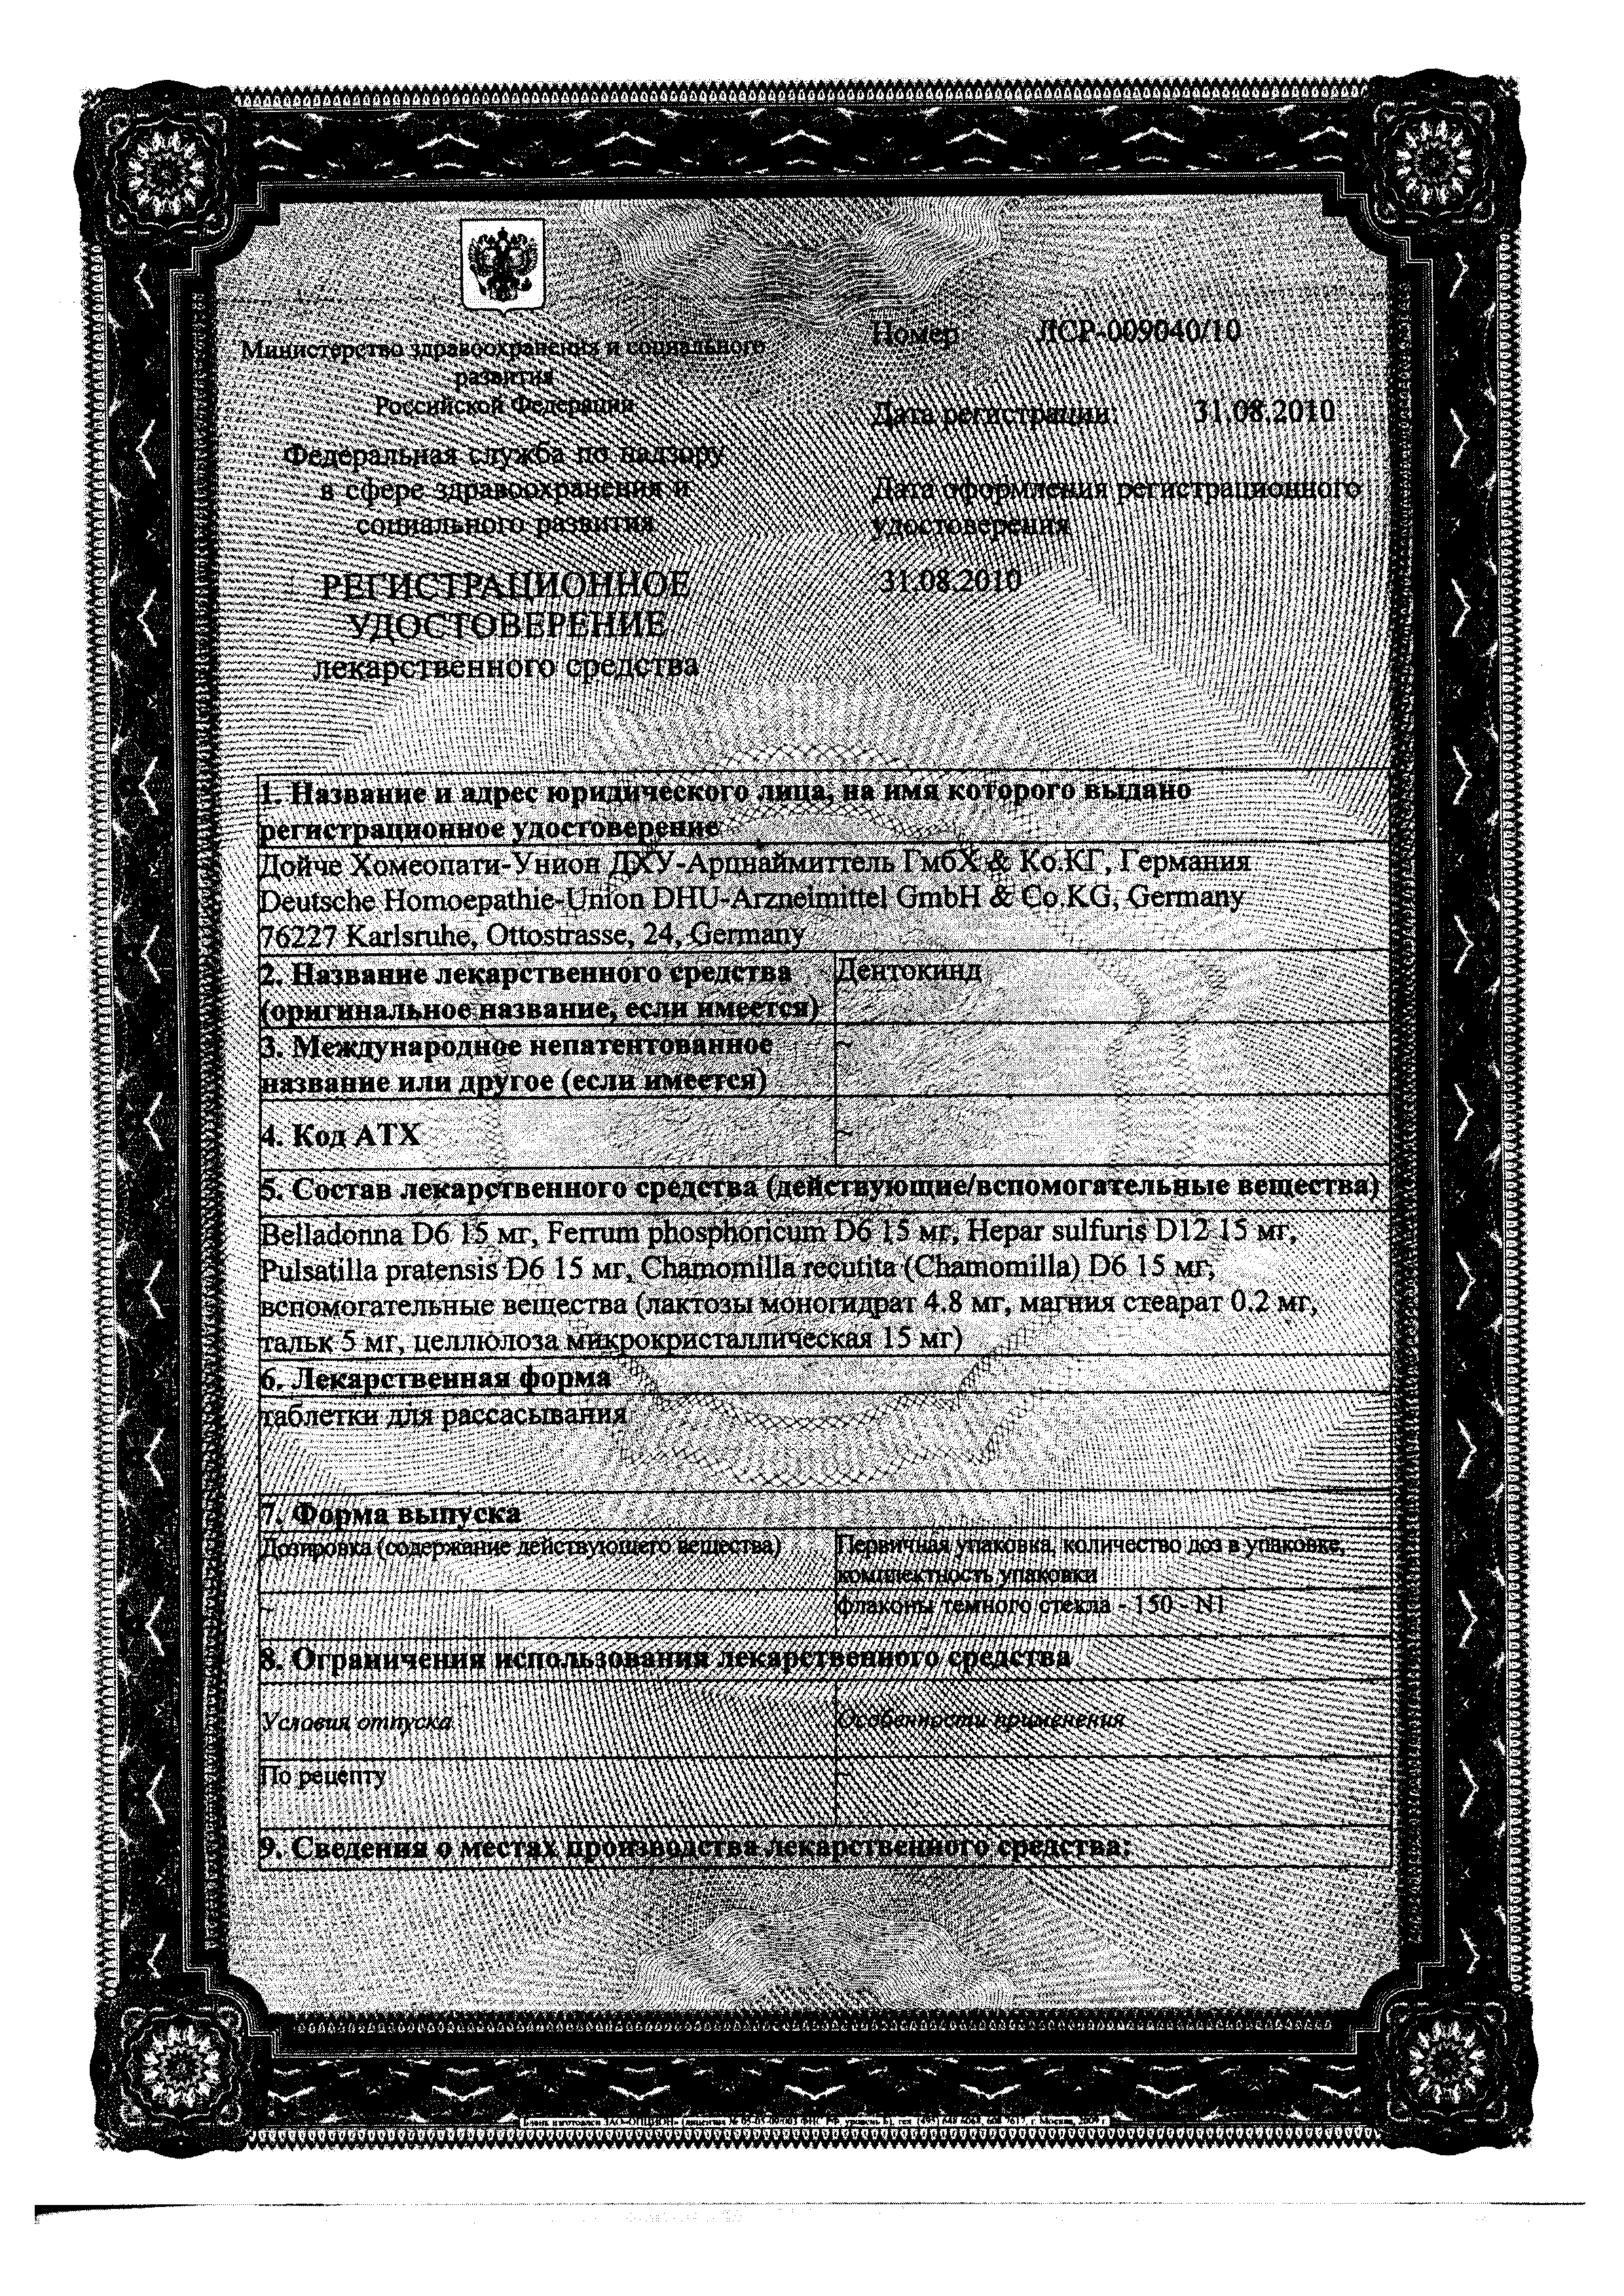 Дентокинд сертификат